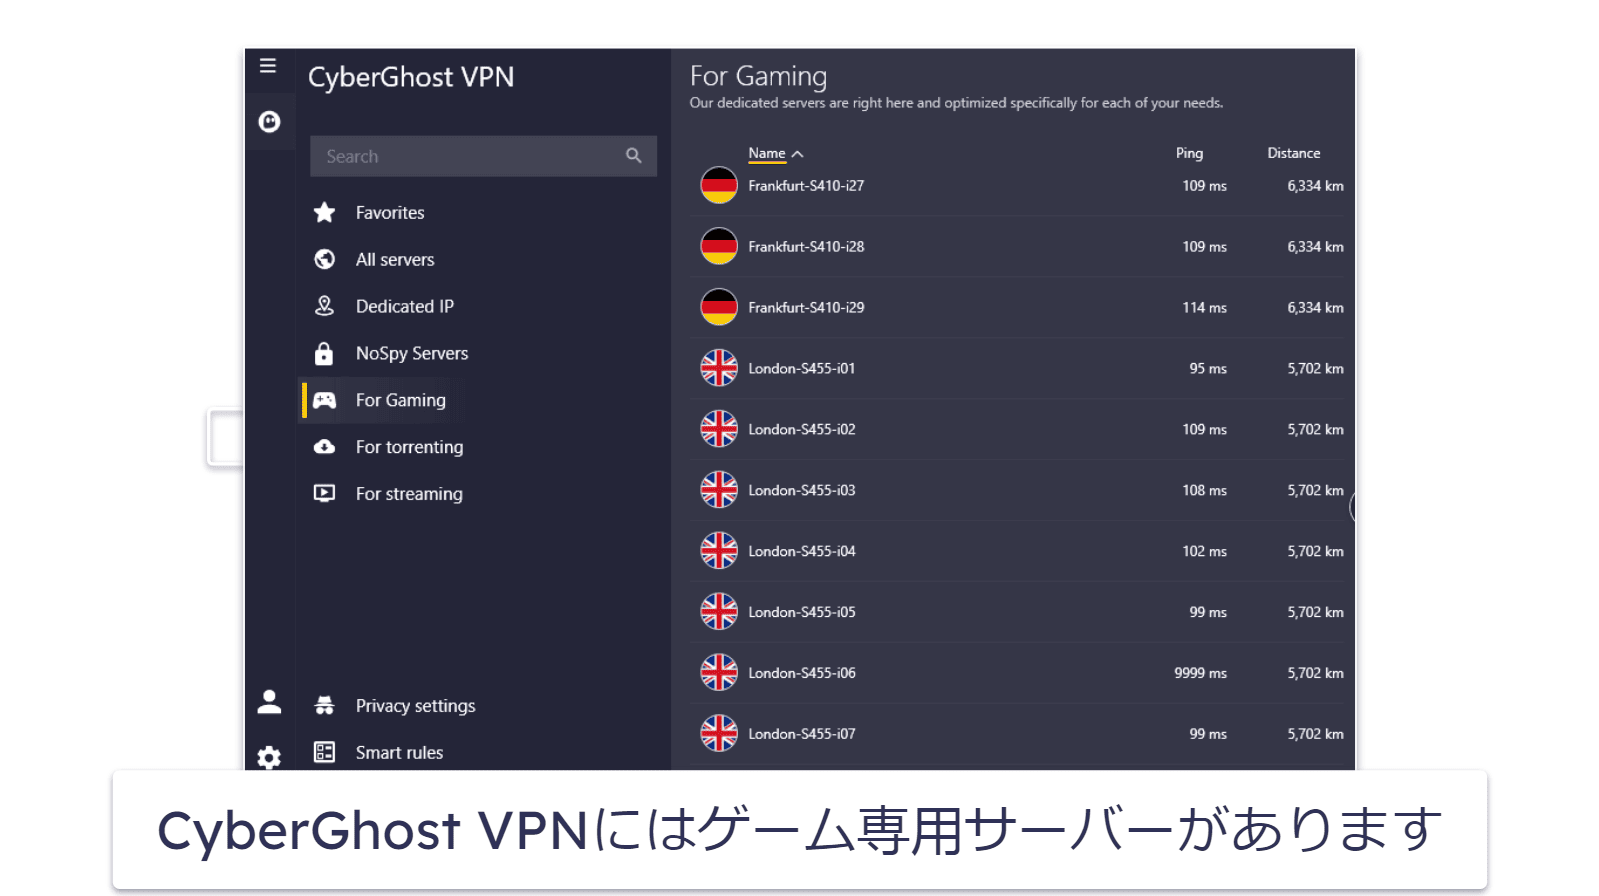 🥉 3. CyberGhost VPN：CoD:MW3向けのゲーム専用サーバーがある